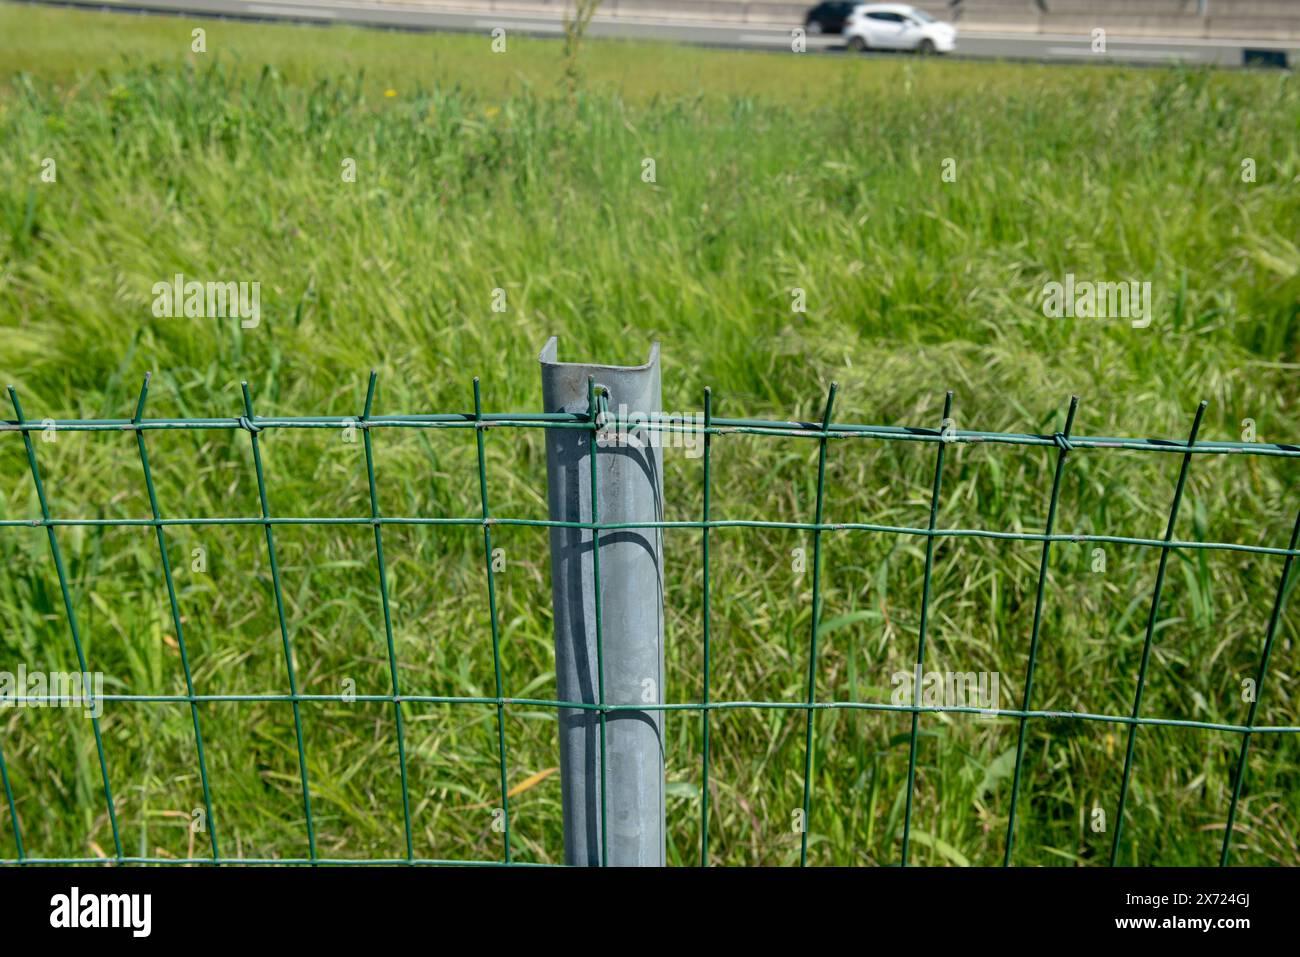 Grenzzaun auf einem Feld mit galvanisiertem Stahlmast und elektrogeschweißtem rechteckigem Maschendraht. Eigenschaftsgrenzen sind mit Polen und Netzen abgegrenzt. Stockfoto